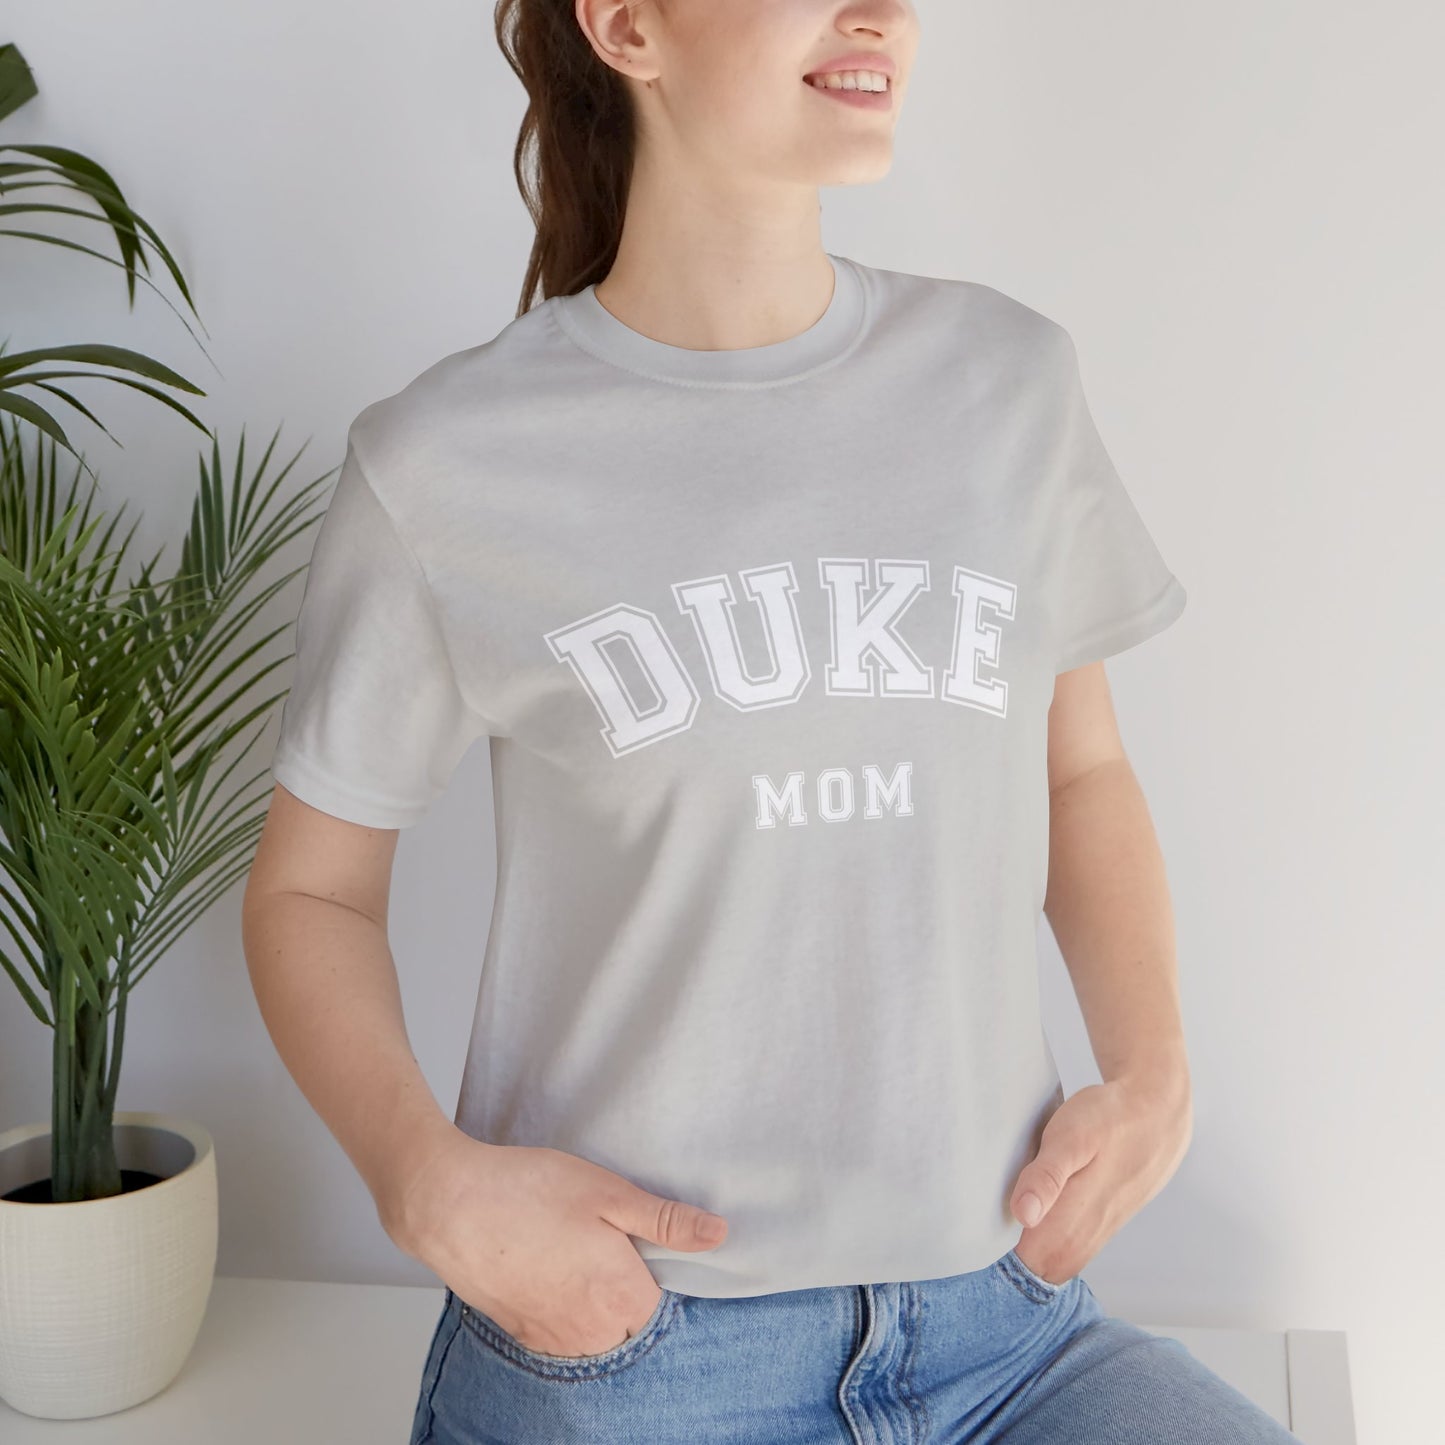 DUKE Mom, parent shirt- Adult, Regular Fit, Soft Cotton, T-shirt